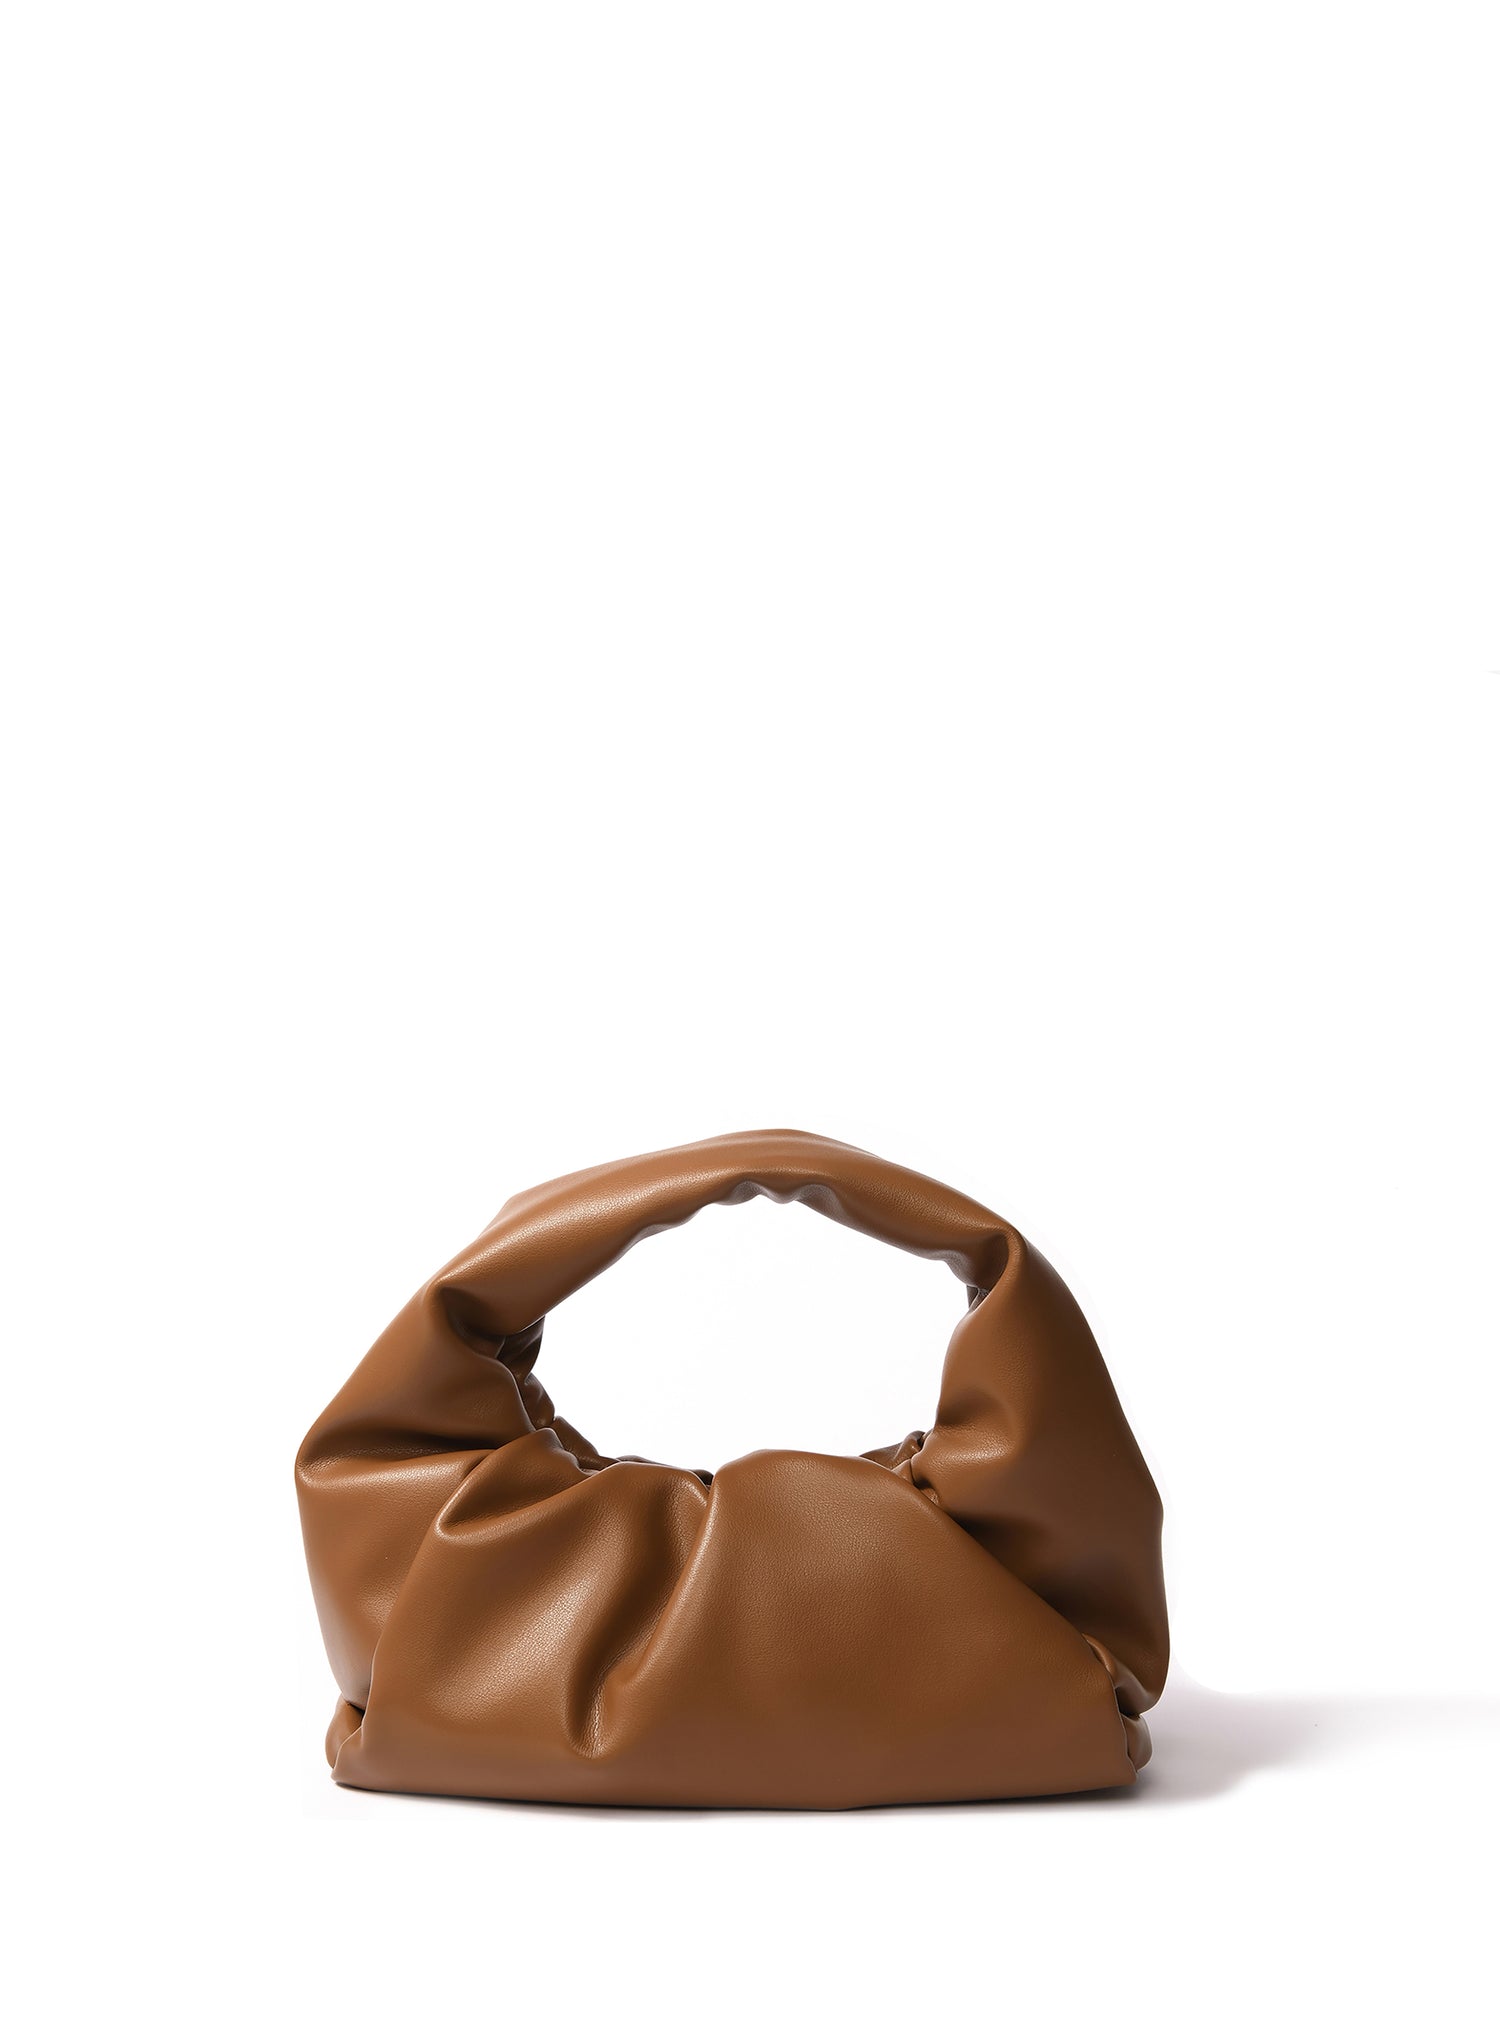 Marshmallow Handbag 